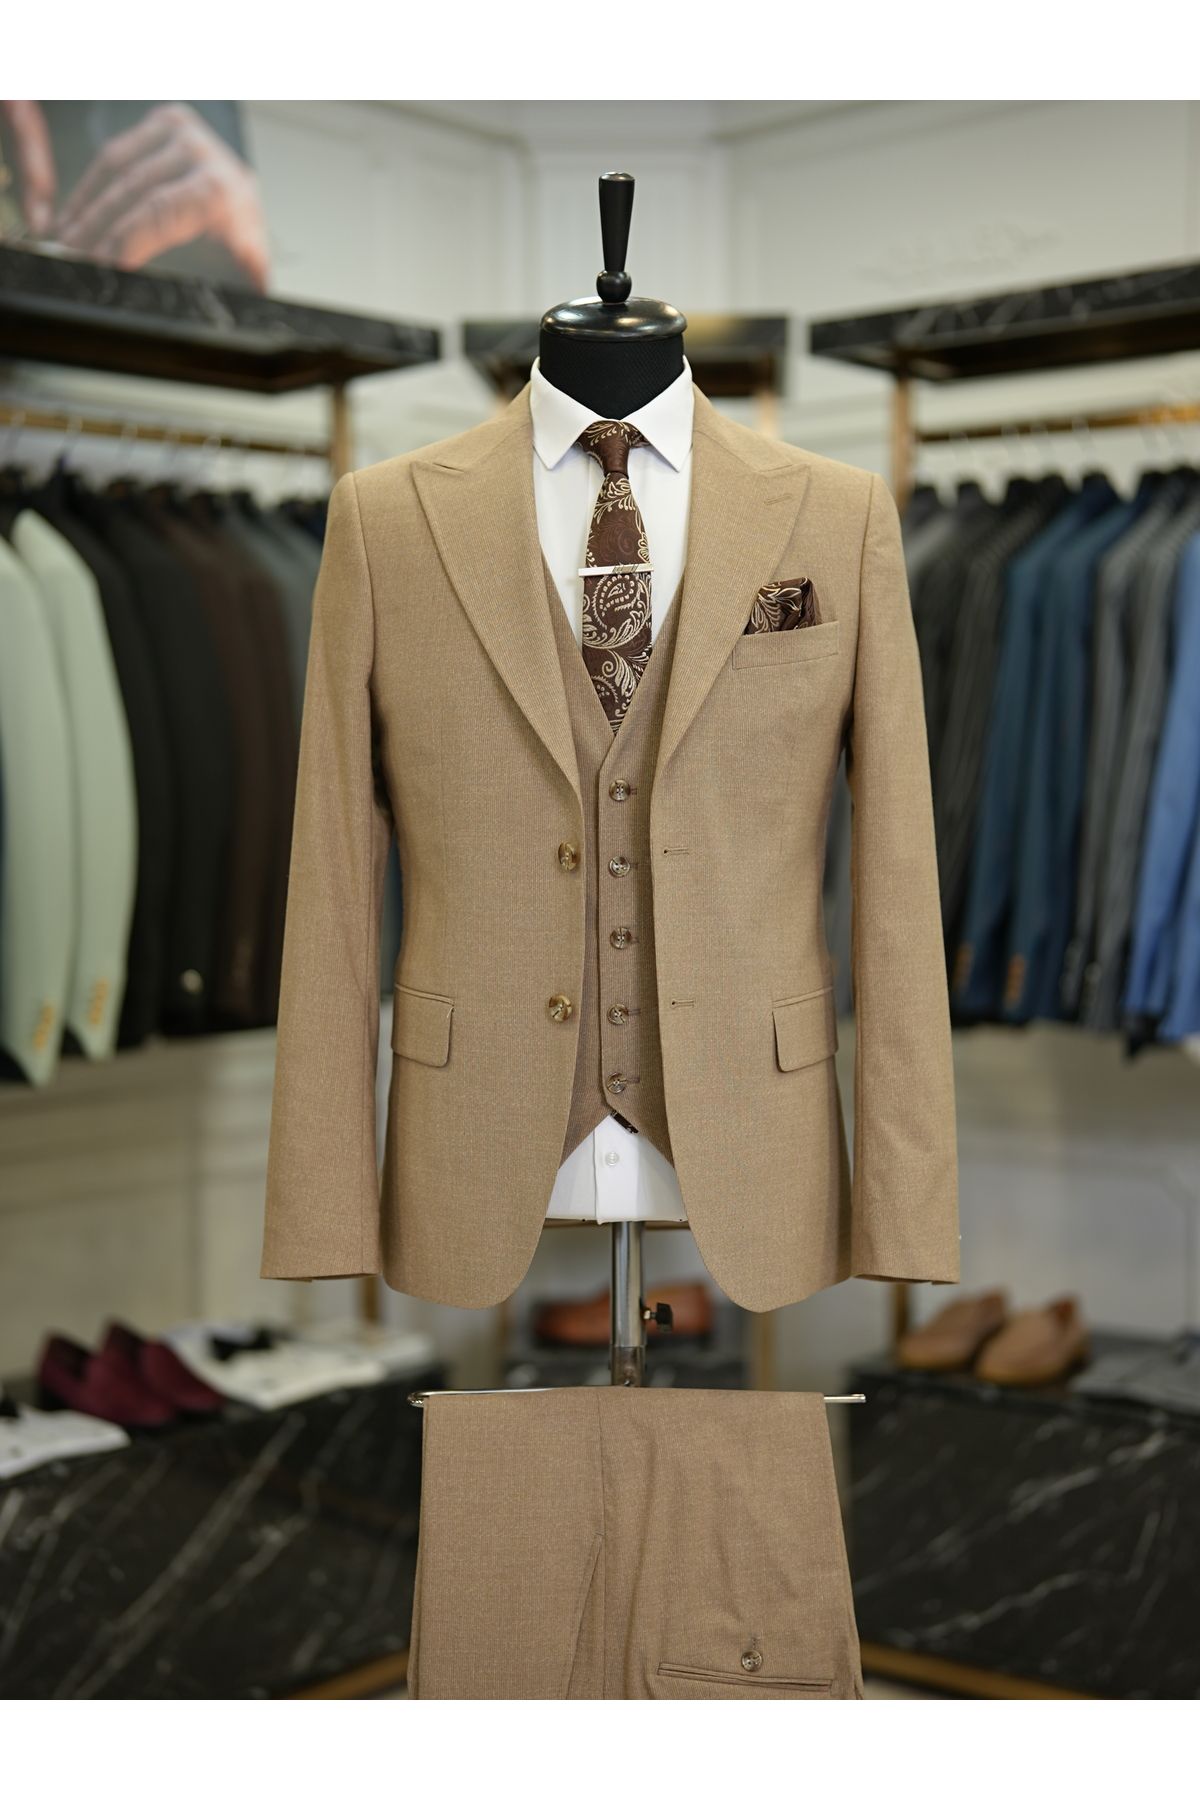 LONATOLİA Erkek Takım Elbise Kırlangıç Yaka İtalyan Stil Slim Fit Ceket Yelek Pantolon-Camel